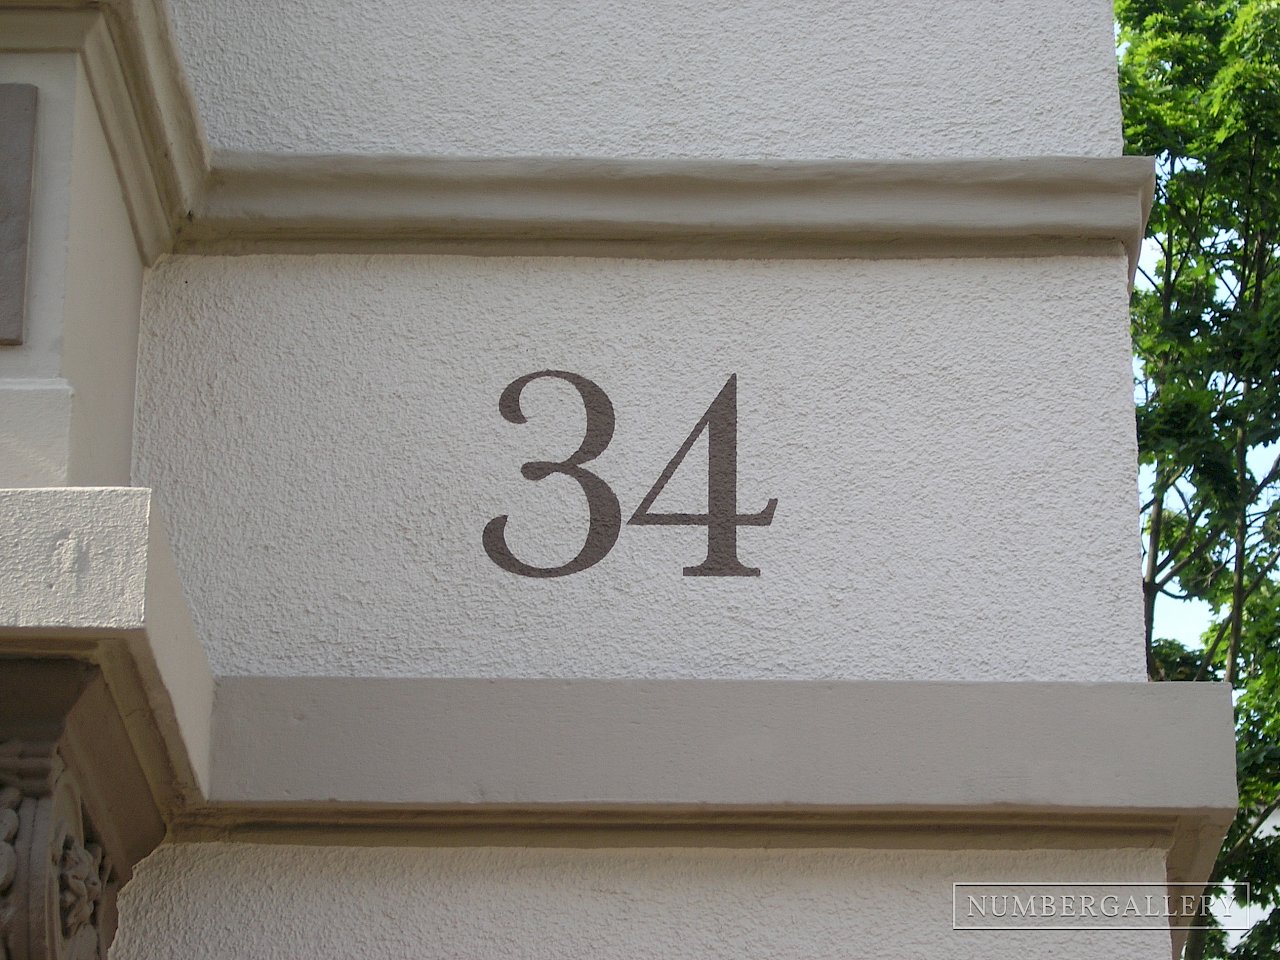 Hausnummer in Frankfurt am Main